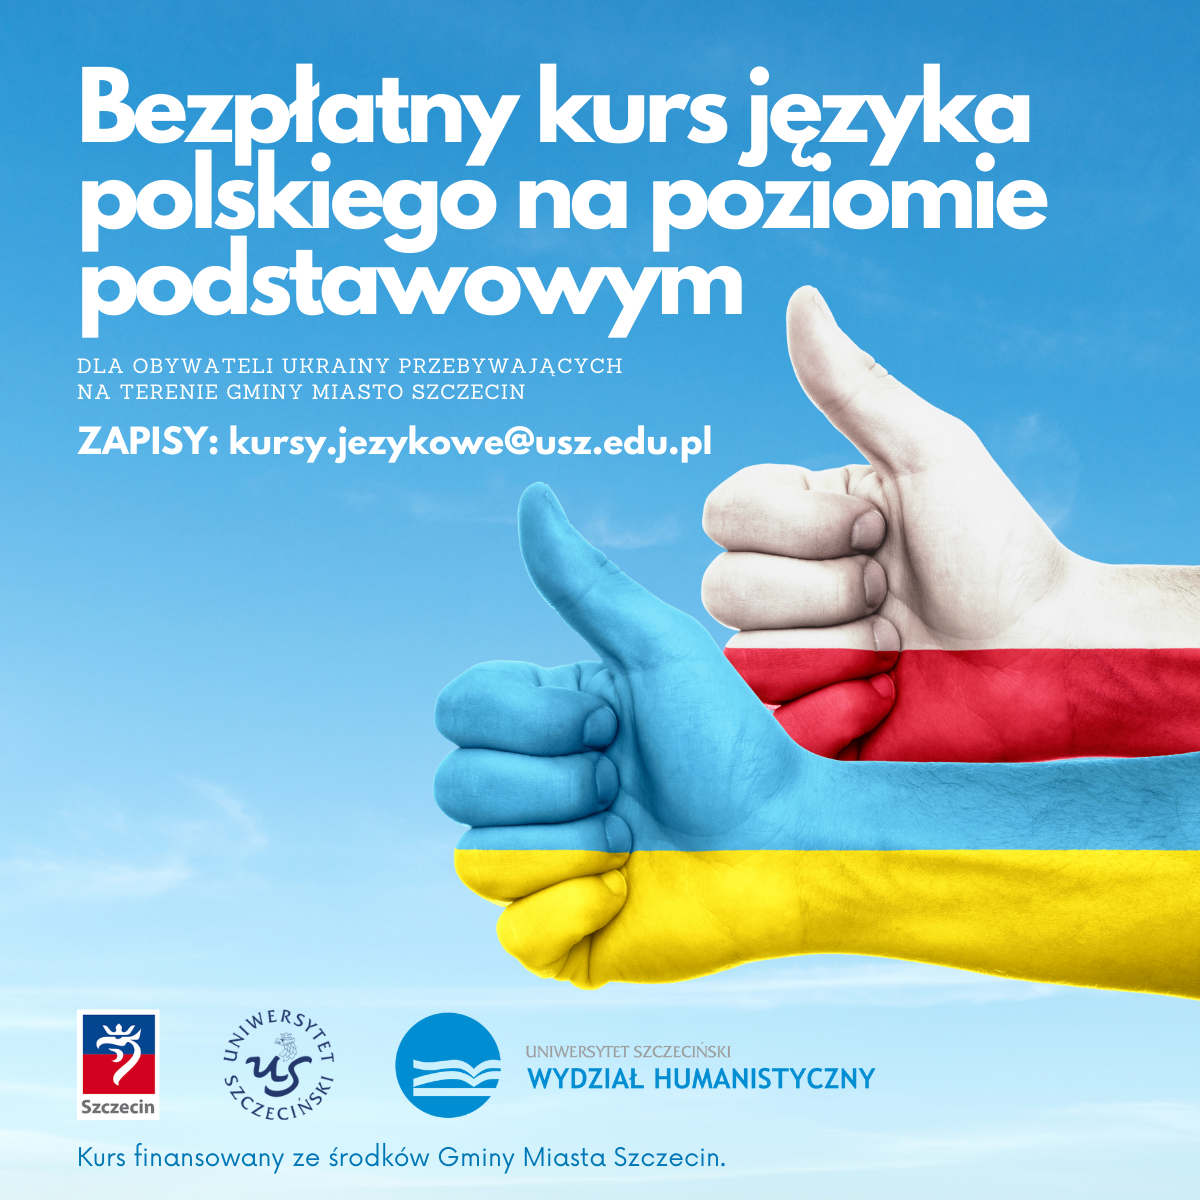 Kursy języka polskiego na poziomie podstawowym dla obywateli Ukrainy przebywających na terenie Gminy Miasto Szczecin